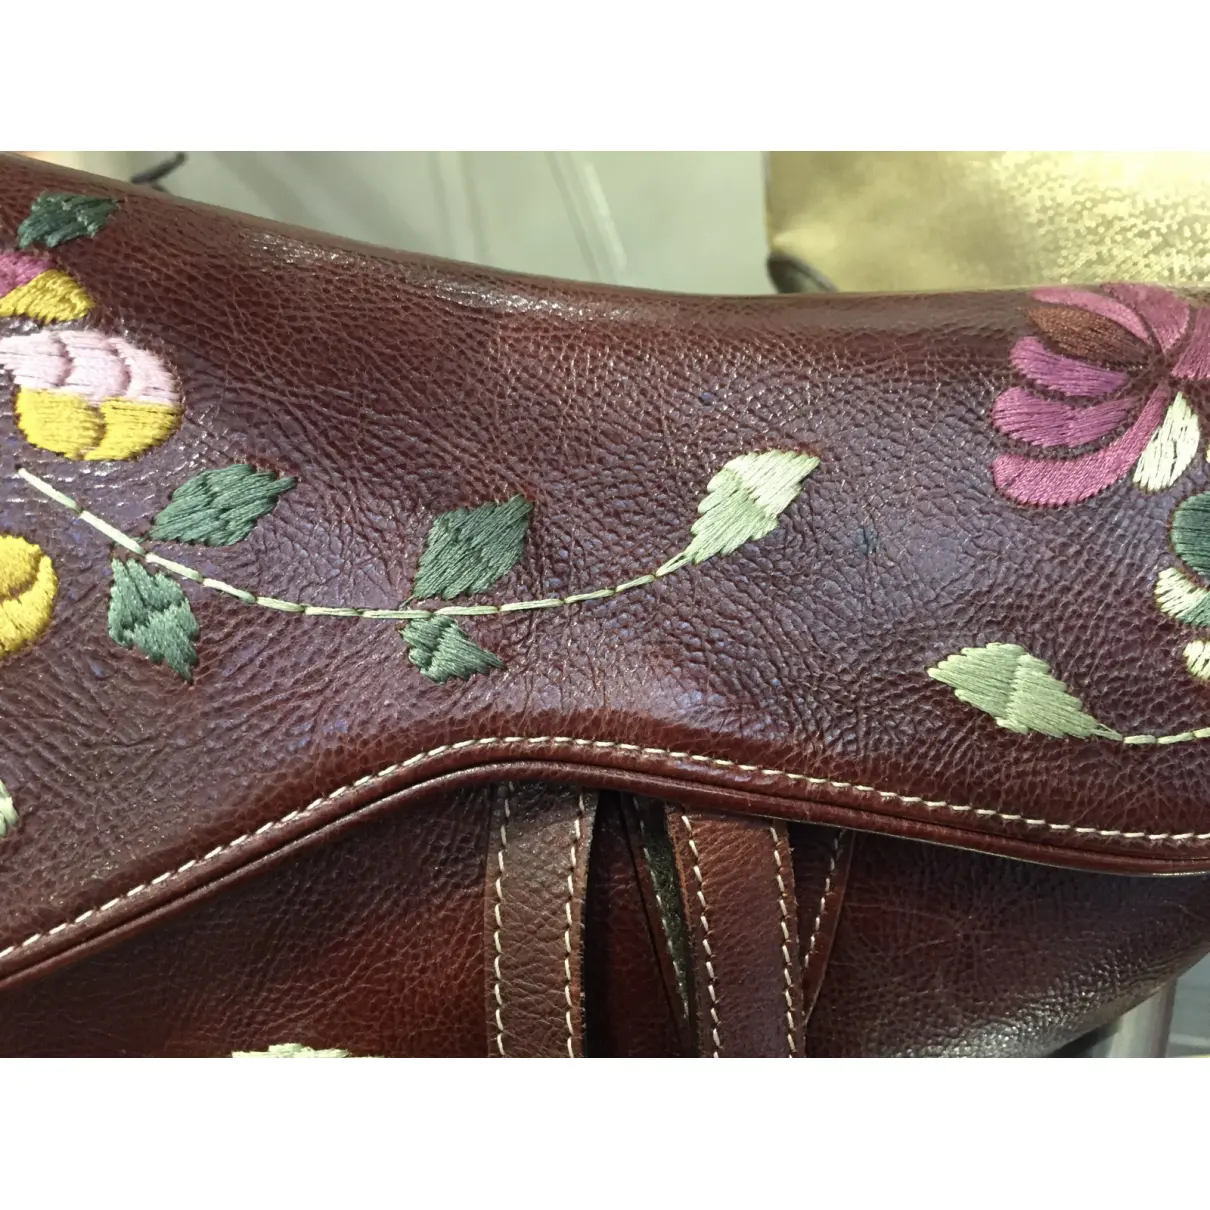 Saddle Vintage leather handbag Dior